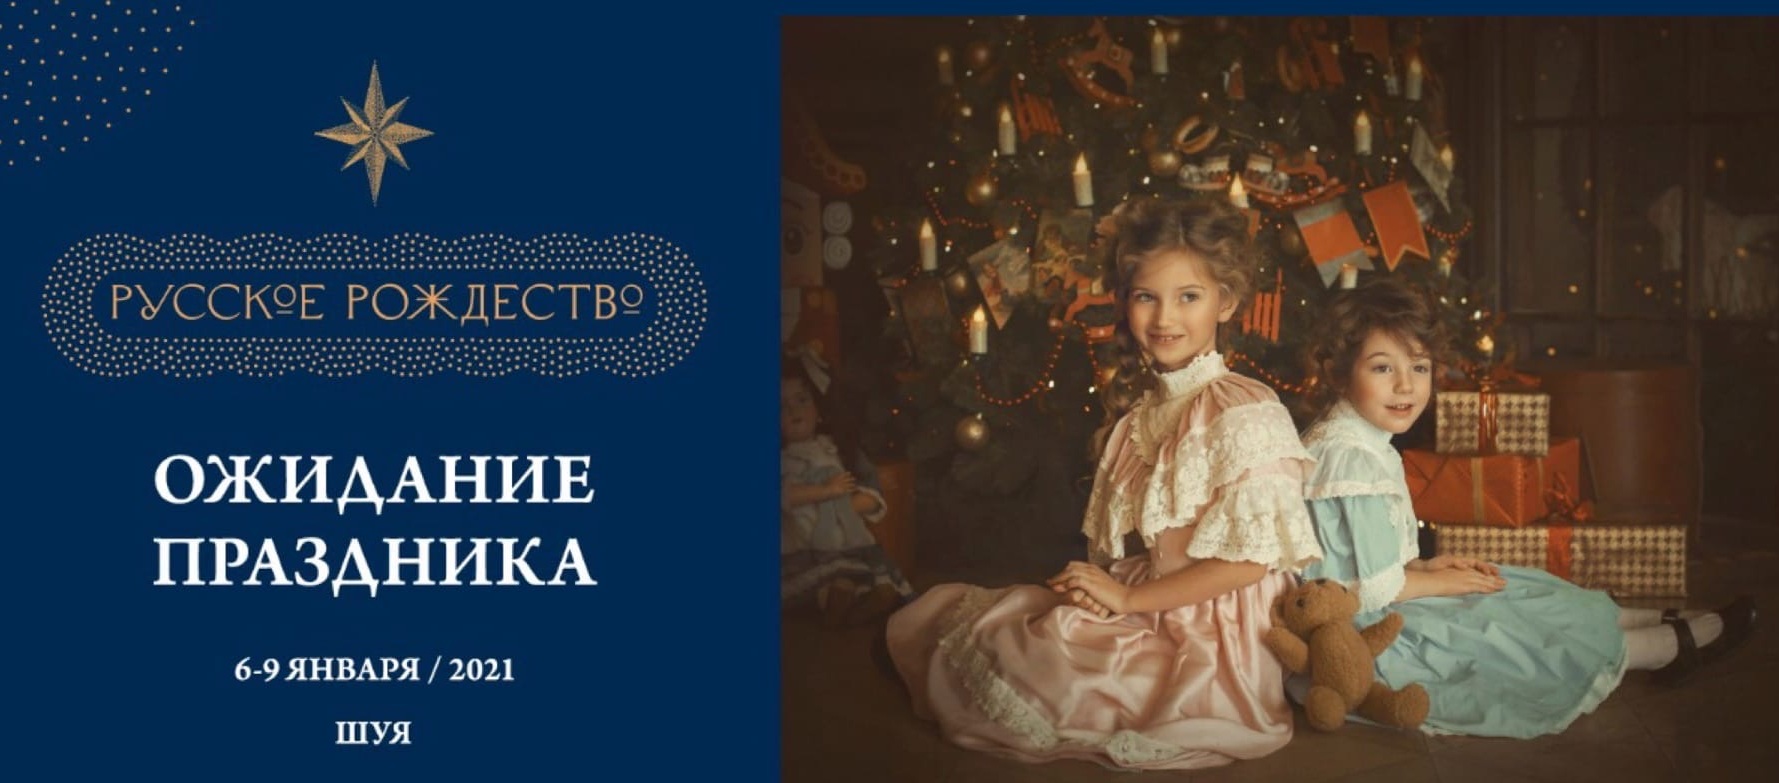 Фестиваль «Русское Рождество» проведут в Шуе с 6 по 9 января